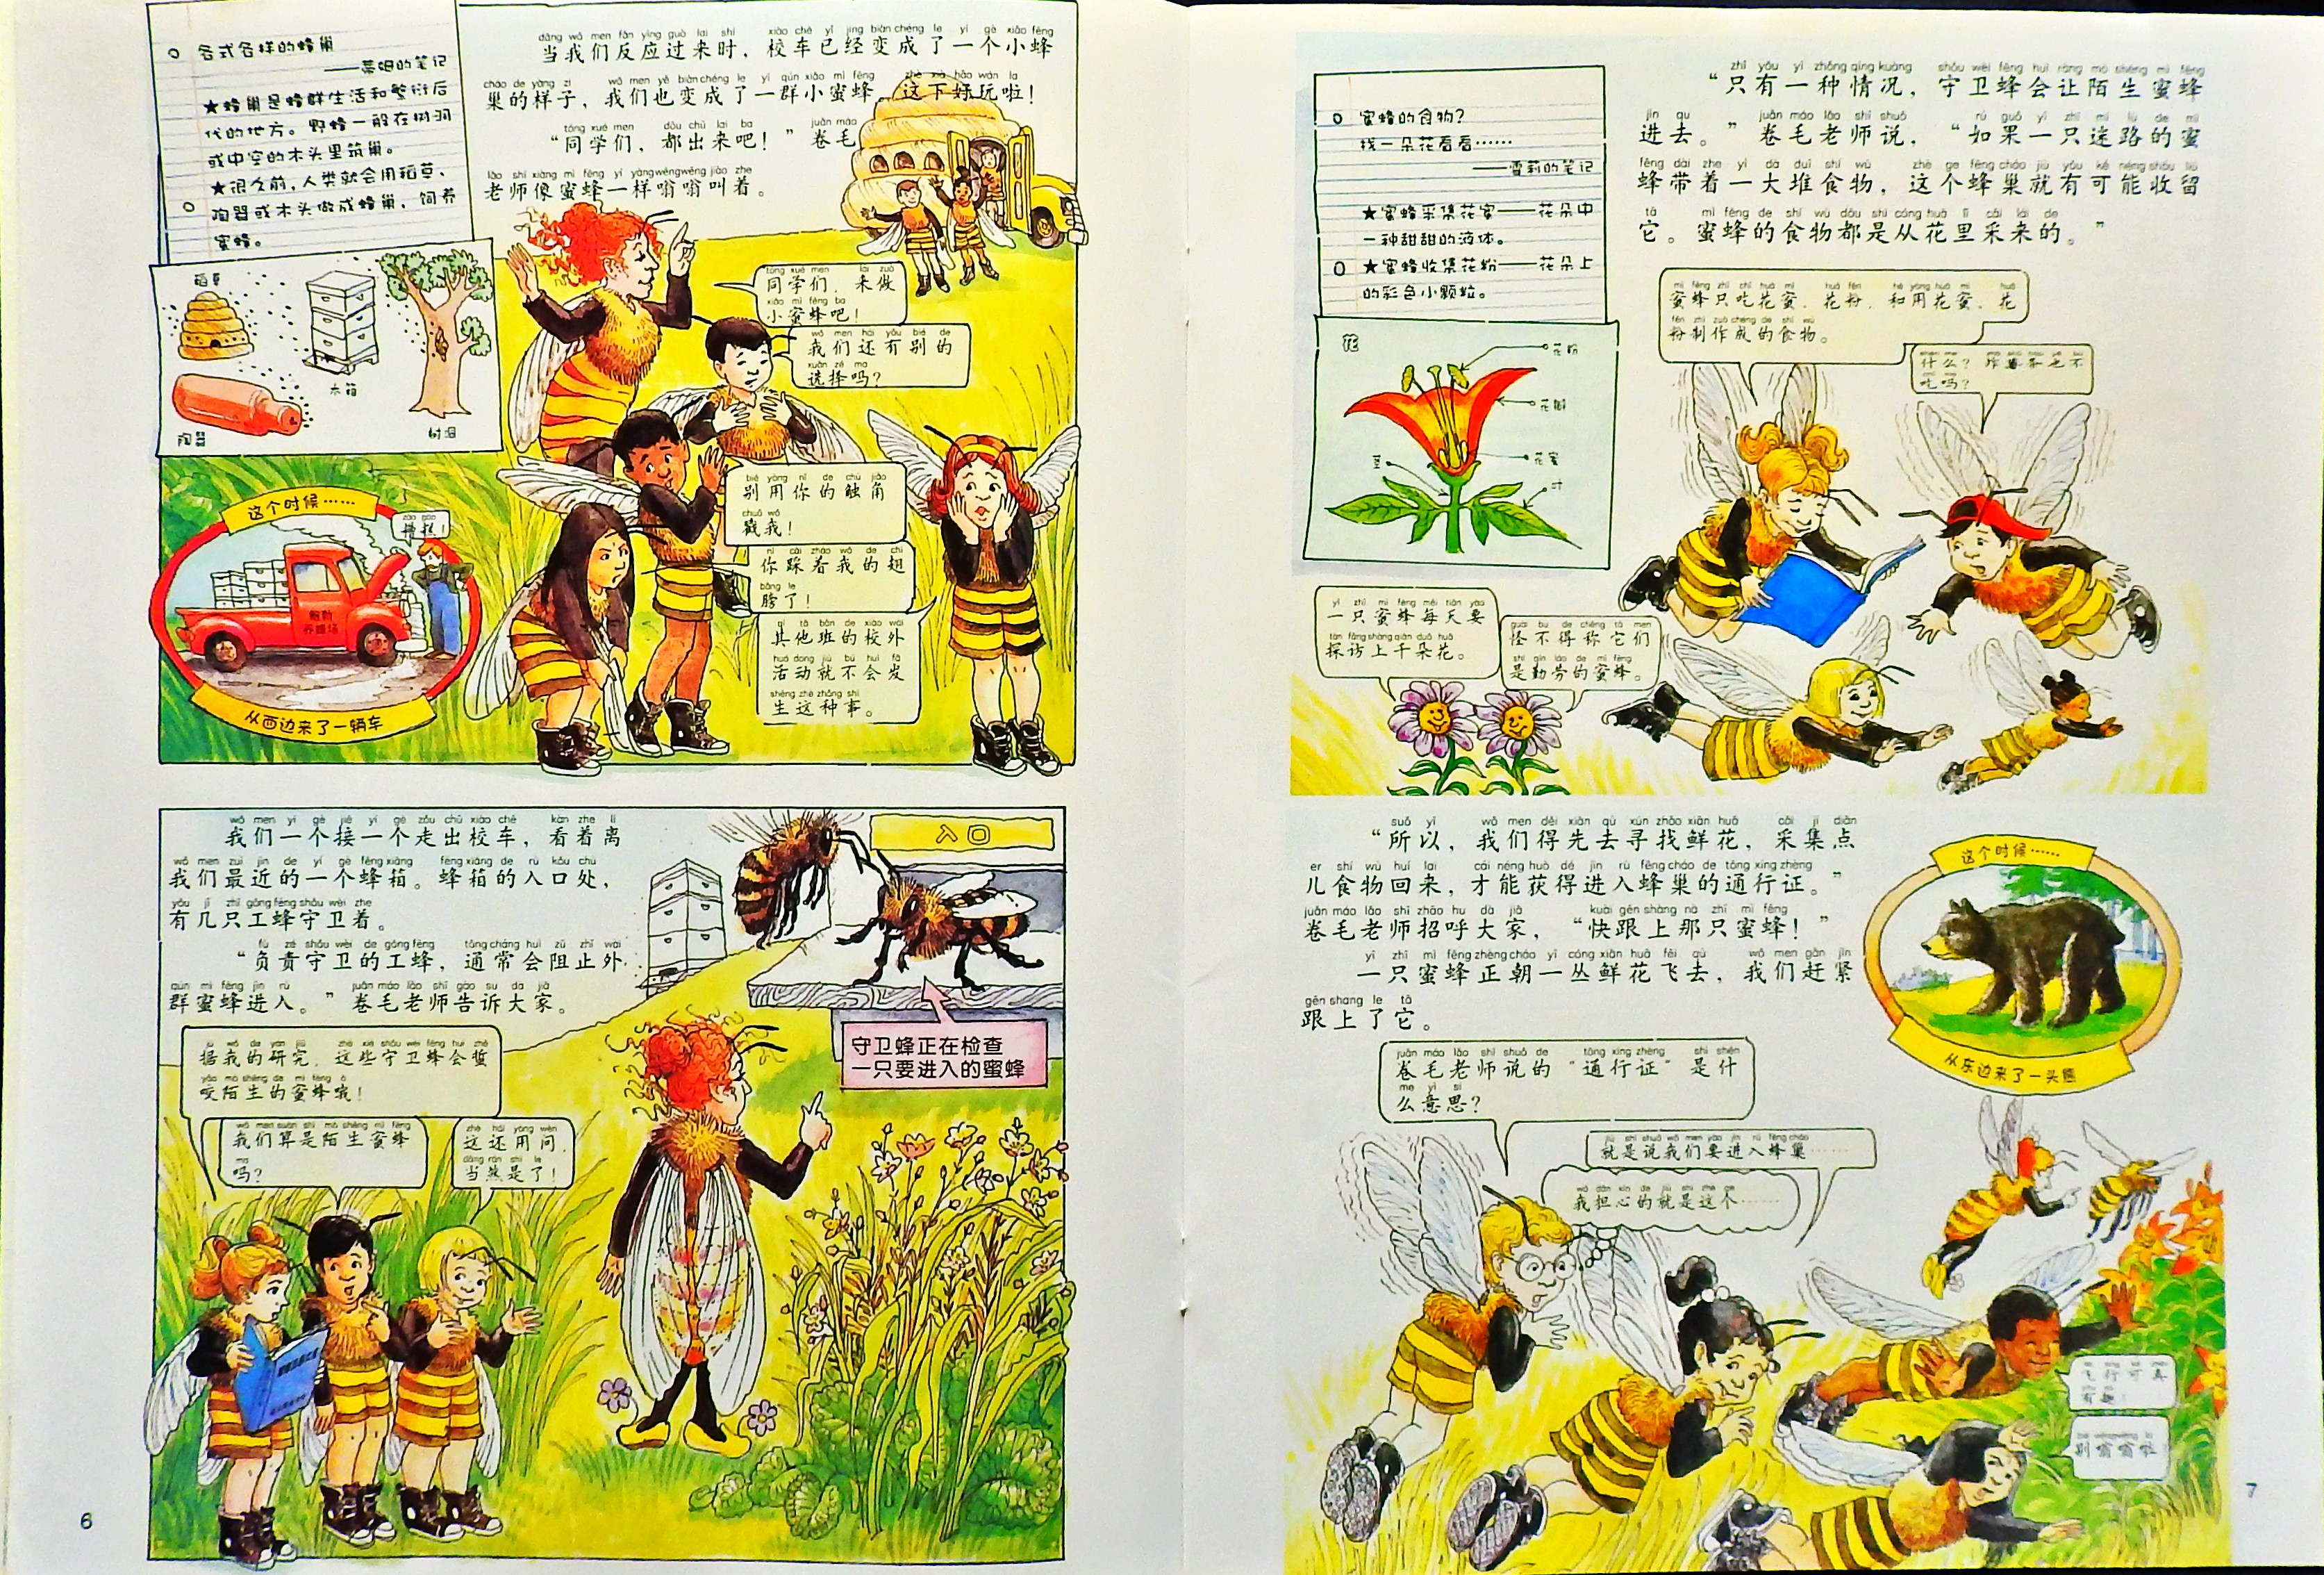 奇妙的蜂巢 (05),绘本,绘本故事,绘本阅读,故事书,童书,图画书,课外阅读